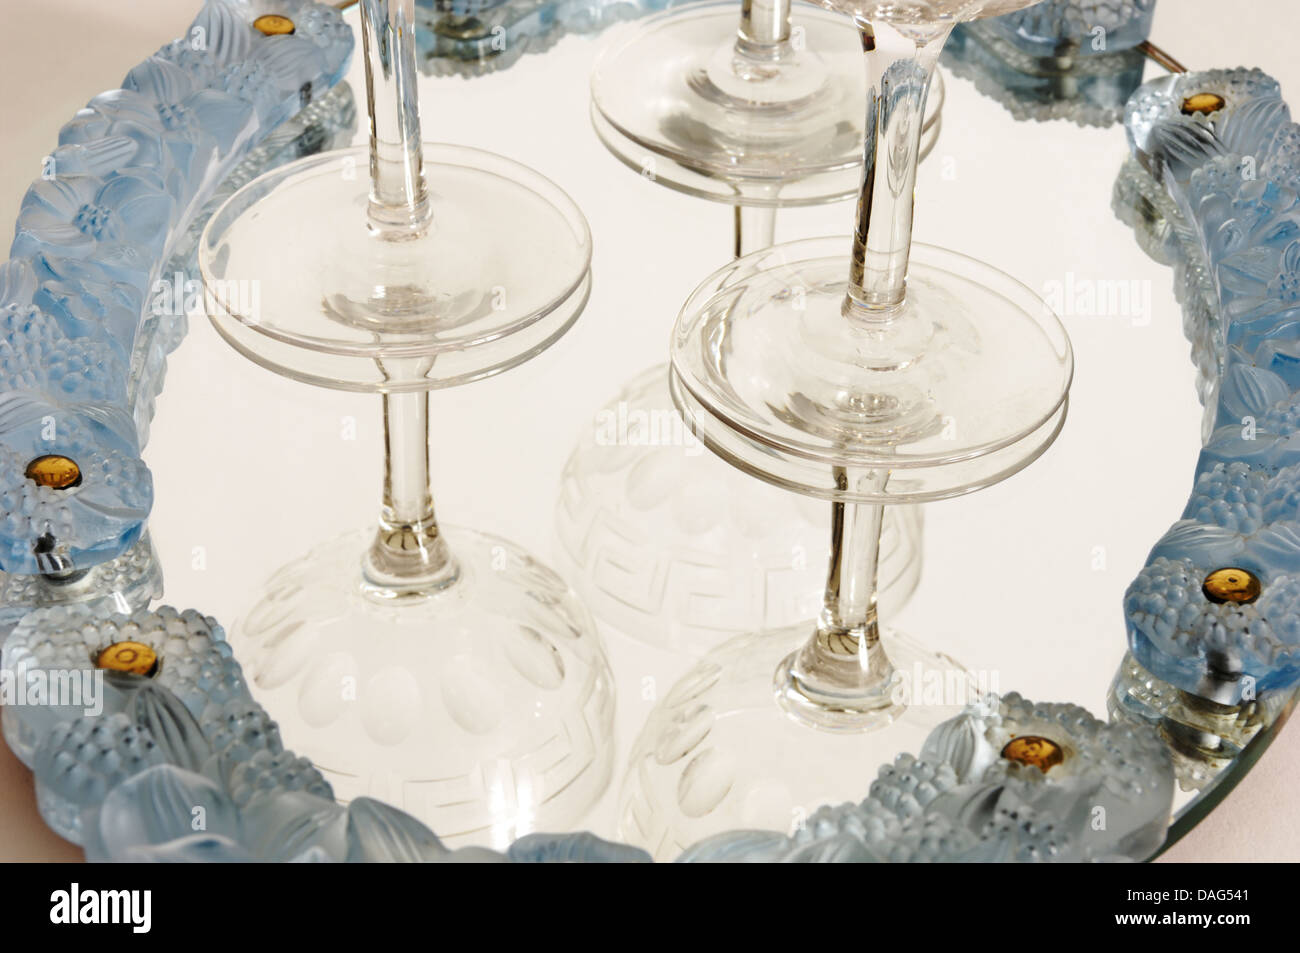 Ein Art-déco-Periode, wohl Französisch, verspiegelten Glas Tablett mit  Champagner-Gläser. Ca. 1920er Jahren der 1930er Jahre. Opalisierend  Glas-Halterungen Stockfotografie - Alamy